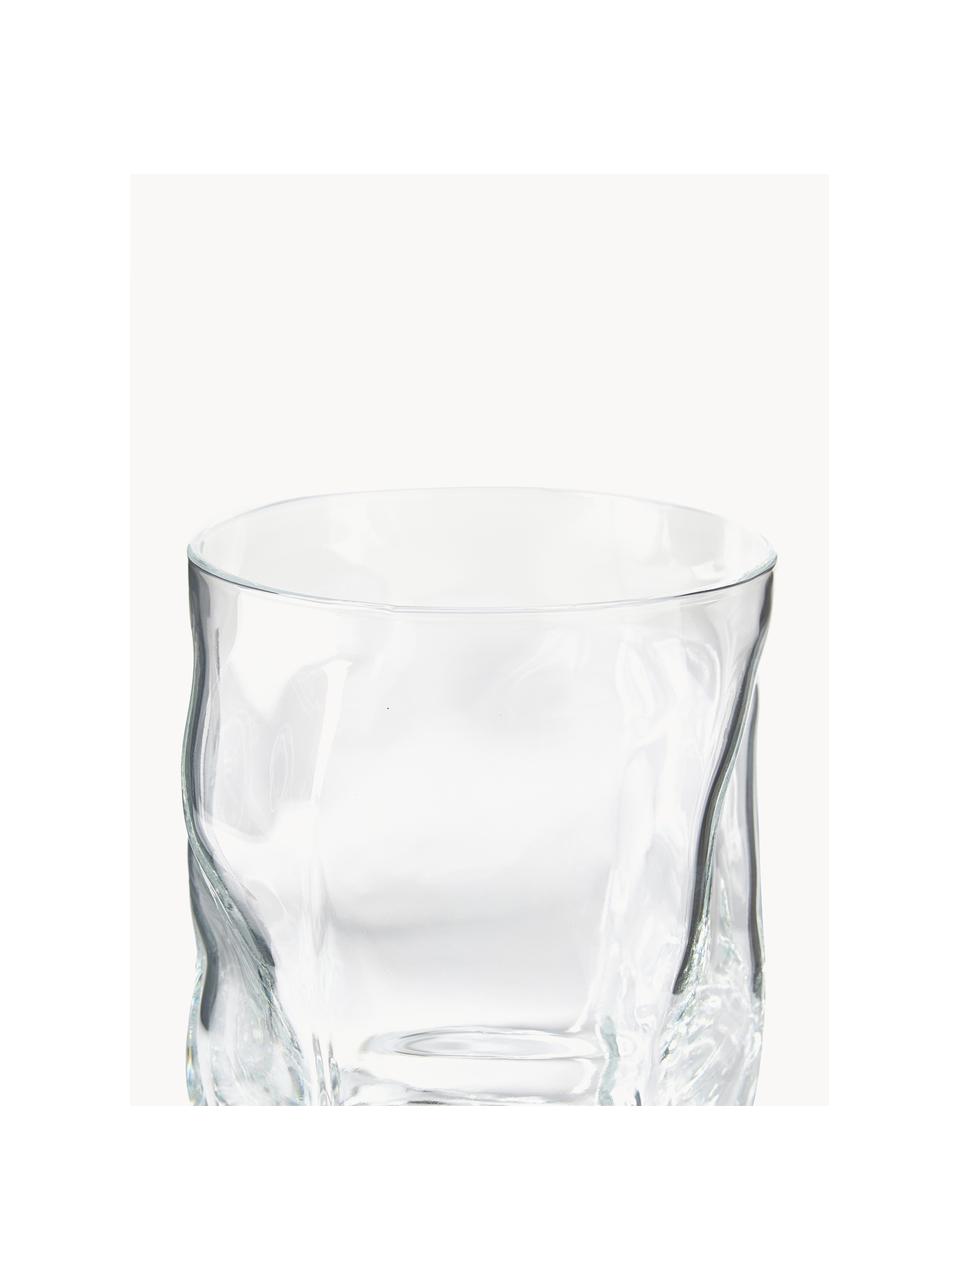 Waterglazen Sorgente in organische vorm, 6 stuks, Glas, Transparant, Ø 9 cm x H 11 cm, 420 ml